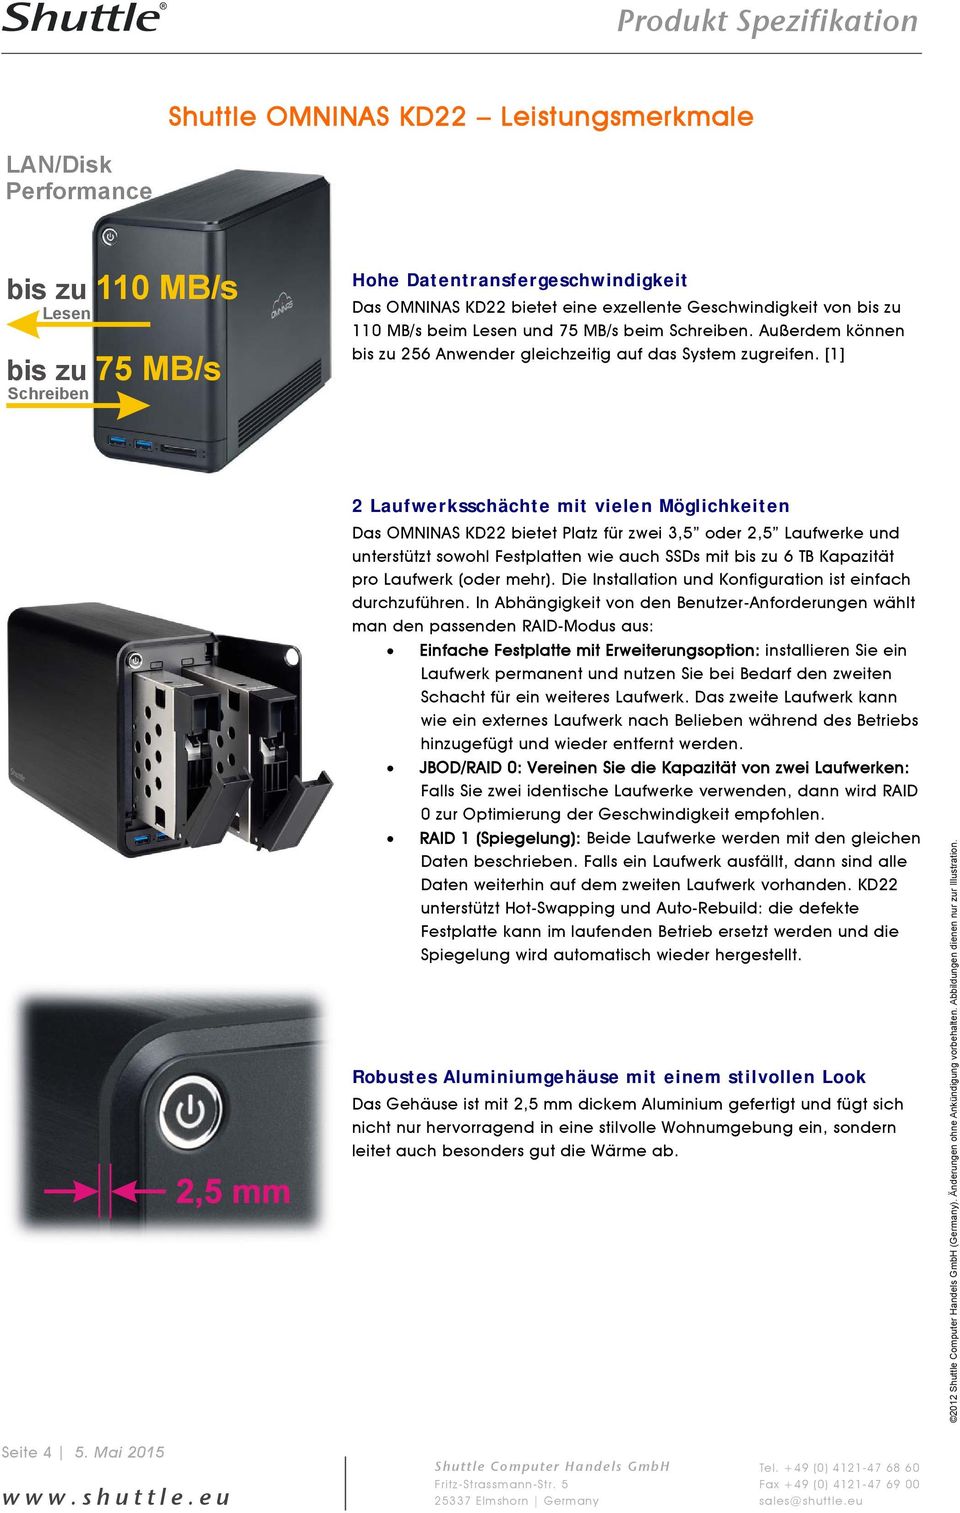 [1] 2 Laufwerksschächte mit vielen Möglichkeiten Das OMNINAS KD22 bietet Platz für zwei 3,5 oder 2,5 Laufwerke und unterstützt sowohl Festplatten wie auch SSDs mit bis zu 6 TB Kapazität pro Laufwerk